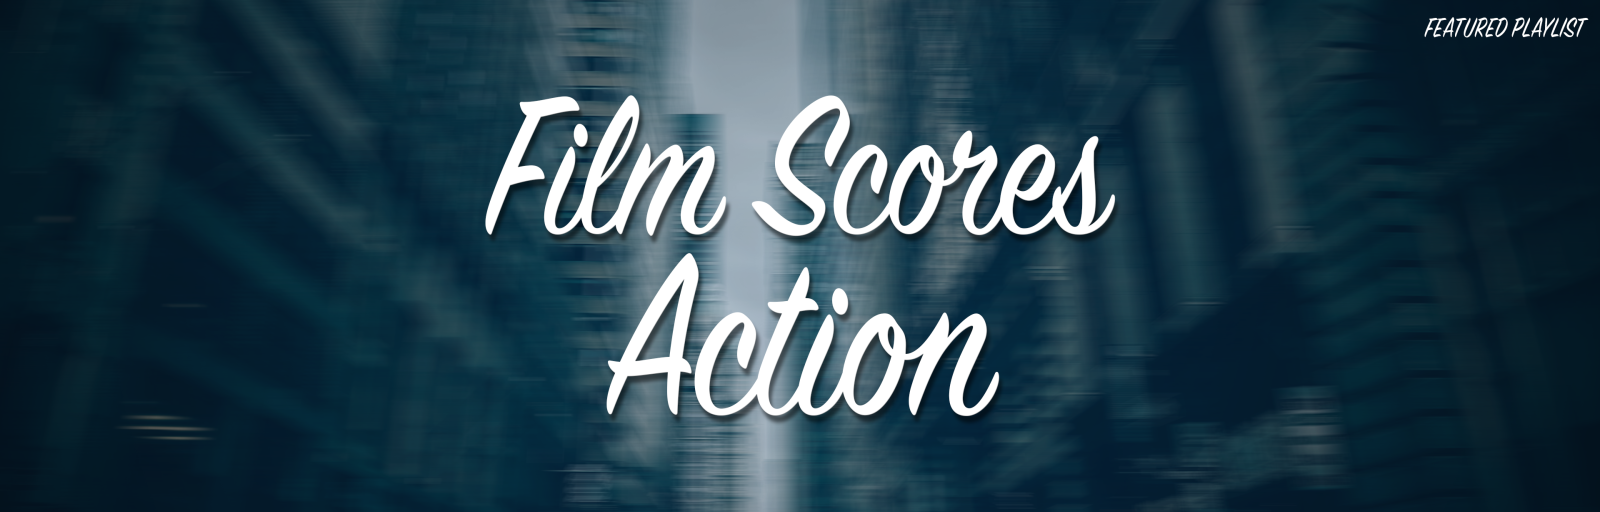 Film Scores - Action playlist